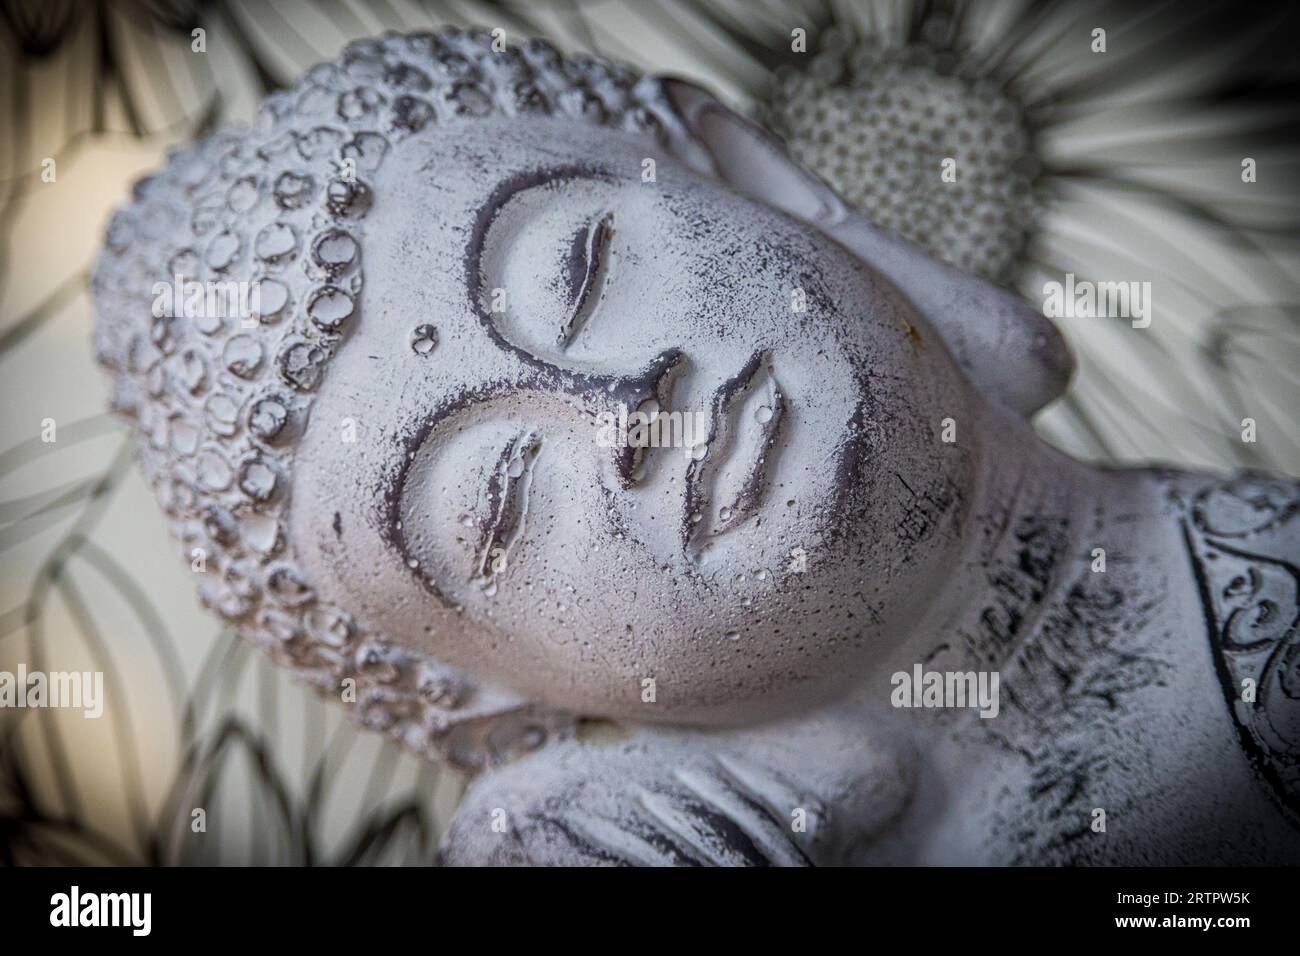 Portrait de Bouddha Banque D'Images